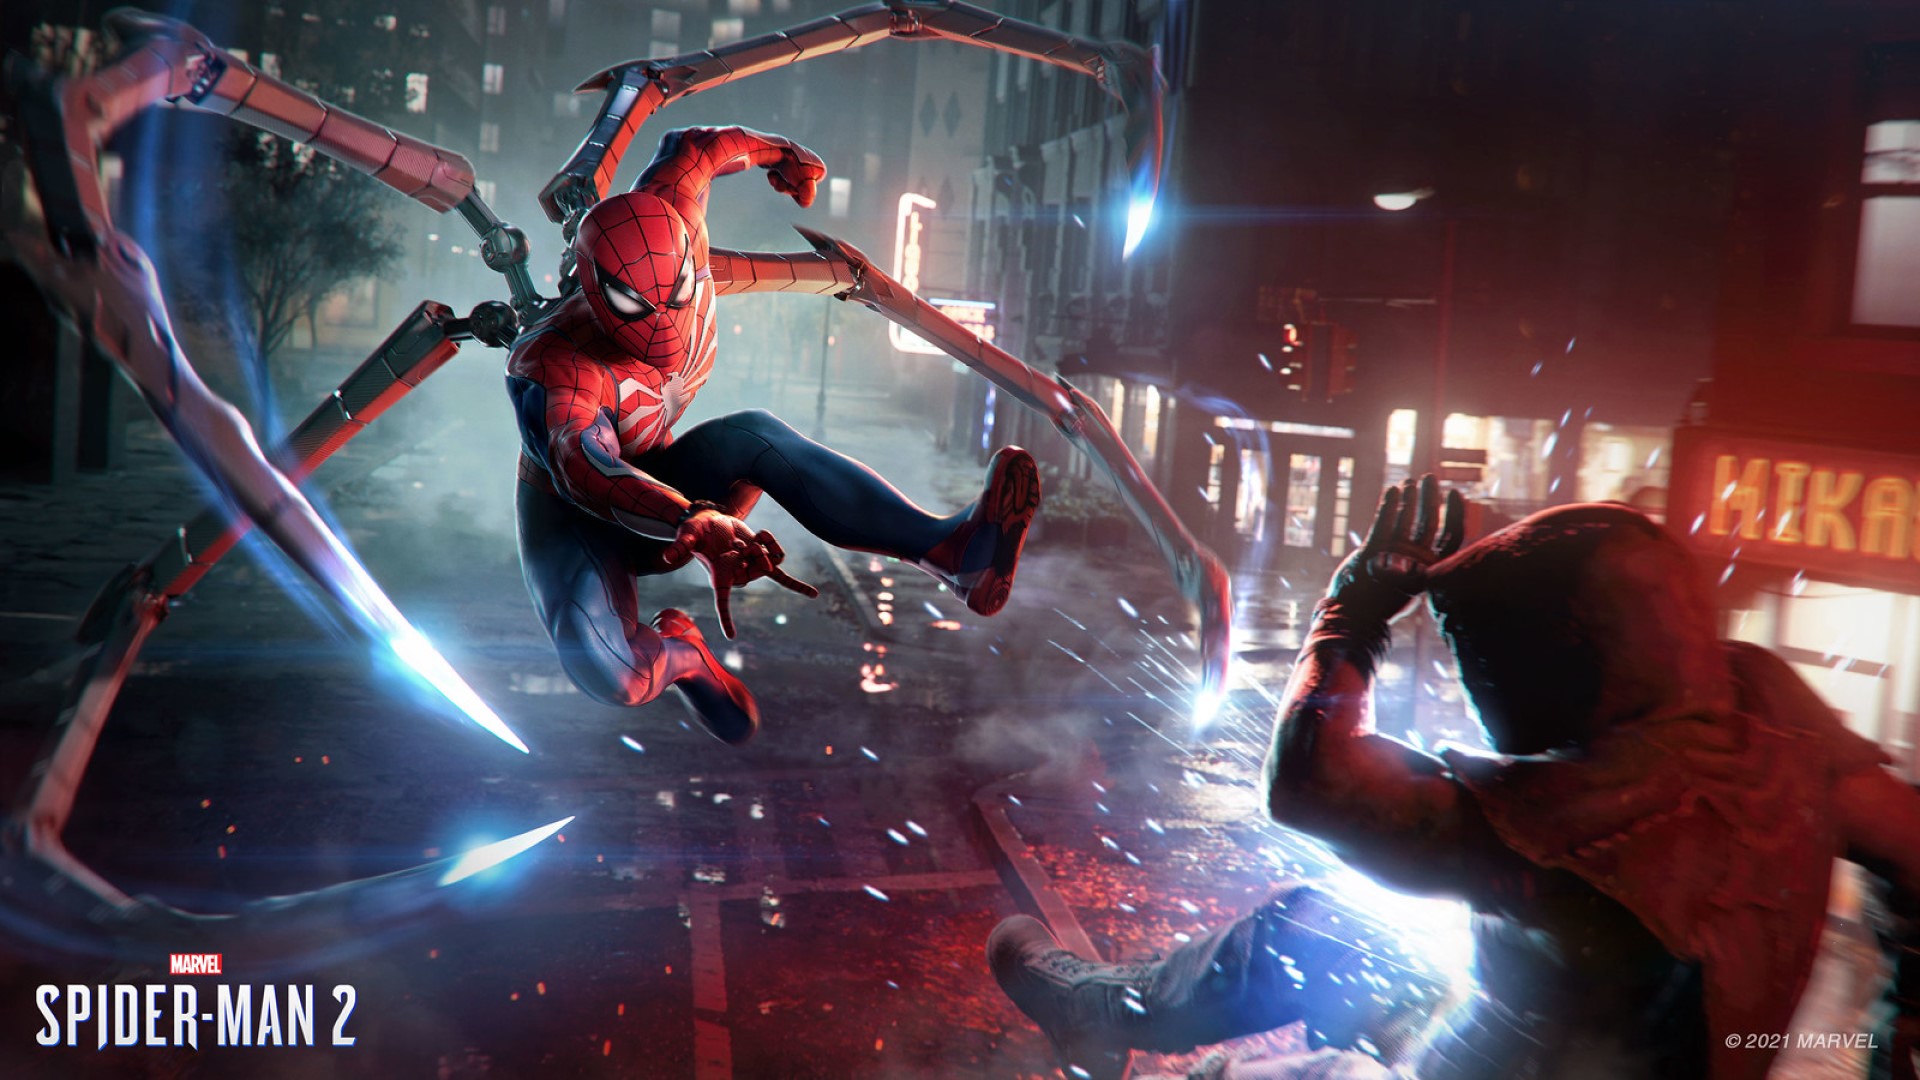 เทรลเลอร์เปิดตัวเกม Marvel's Spider-Man 2 มียอดเข้าชมทะลุ 20 ล้านวิวแล้ว